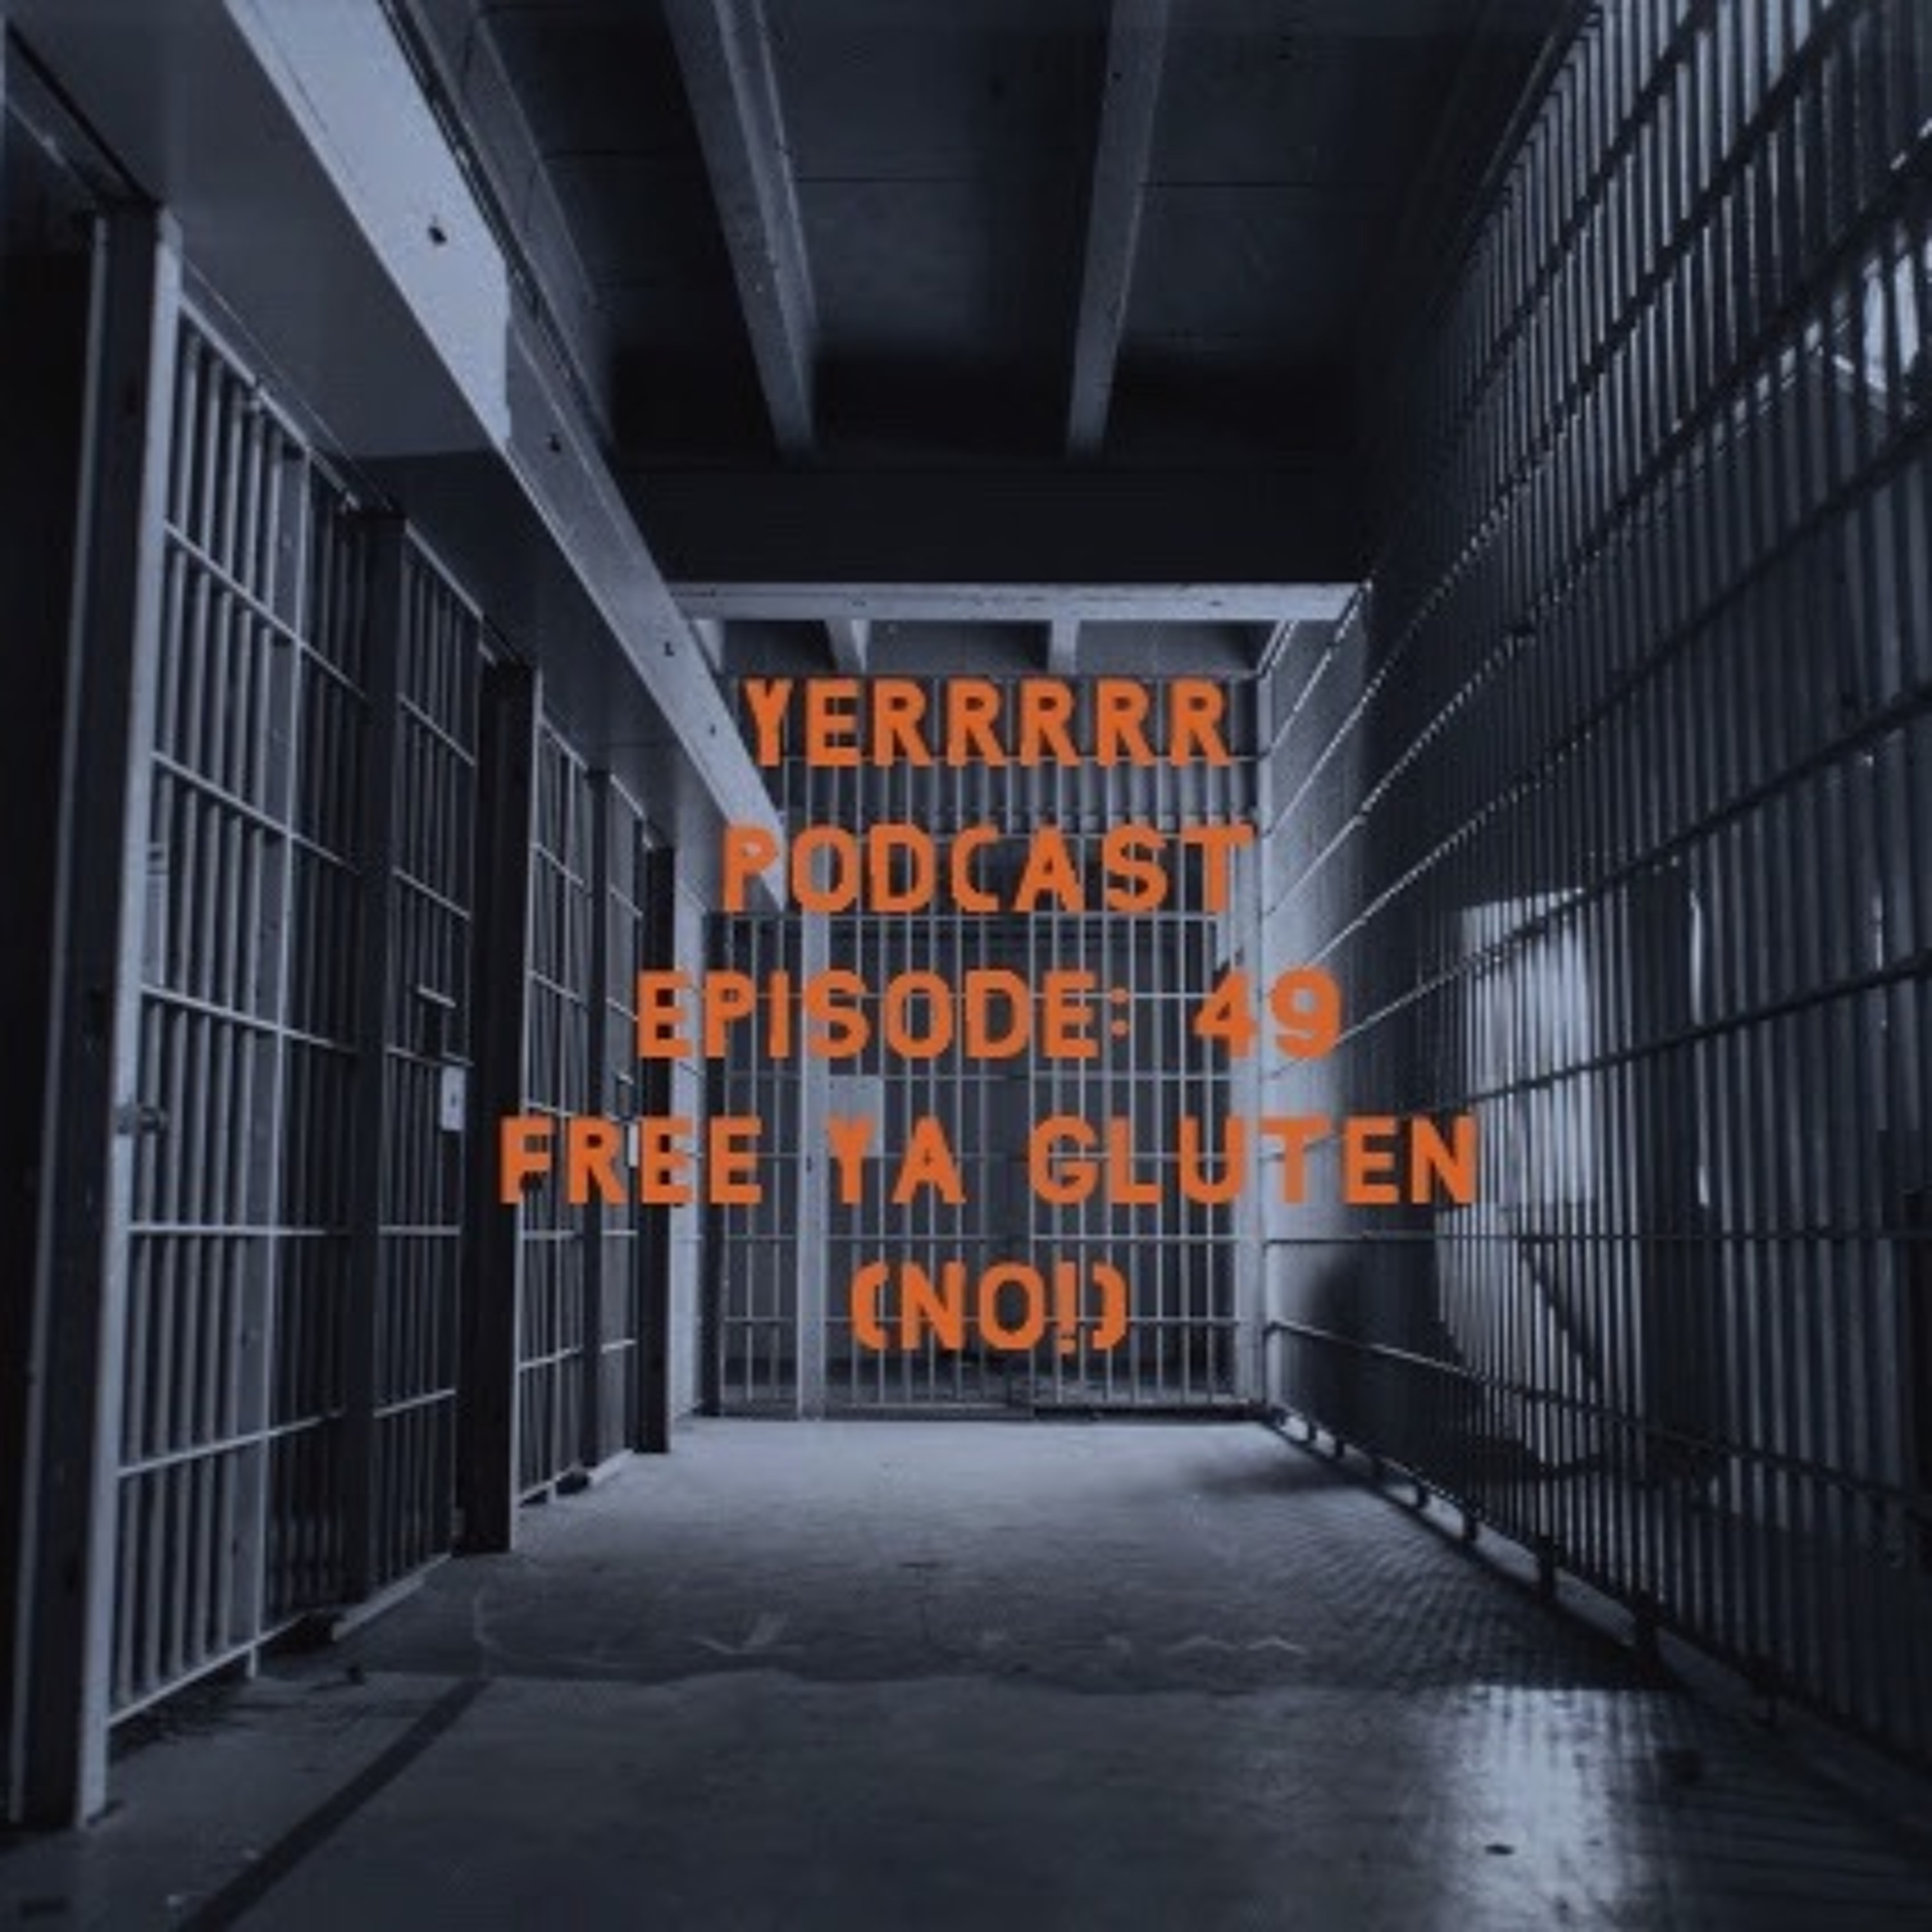 Episode 49: Free Ya Gluten (No!)